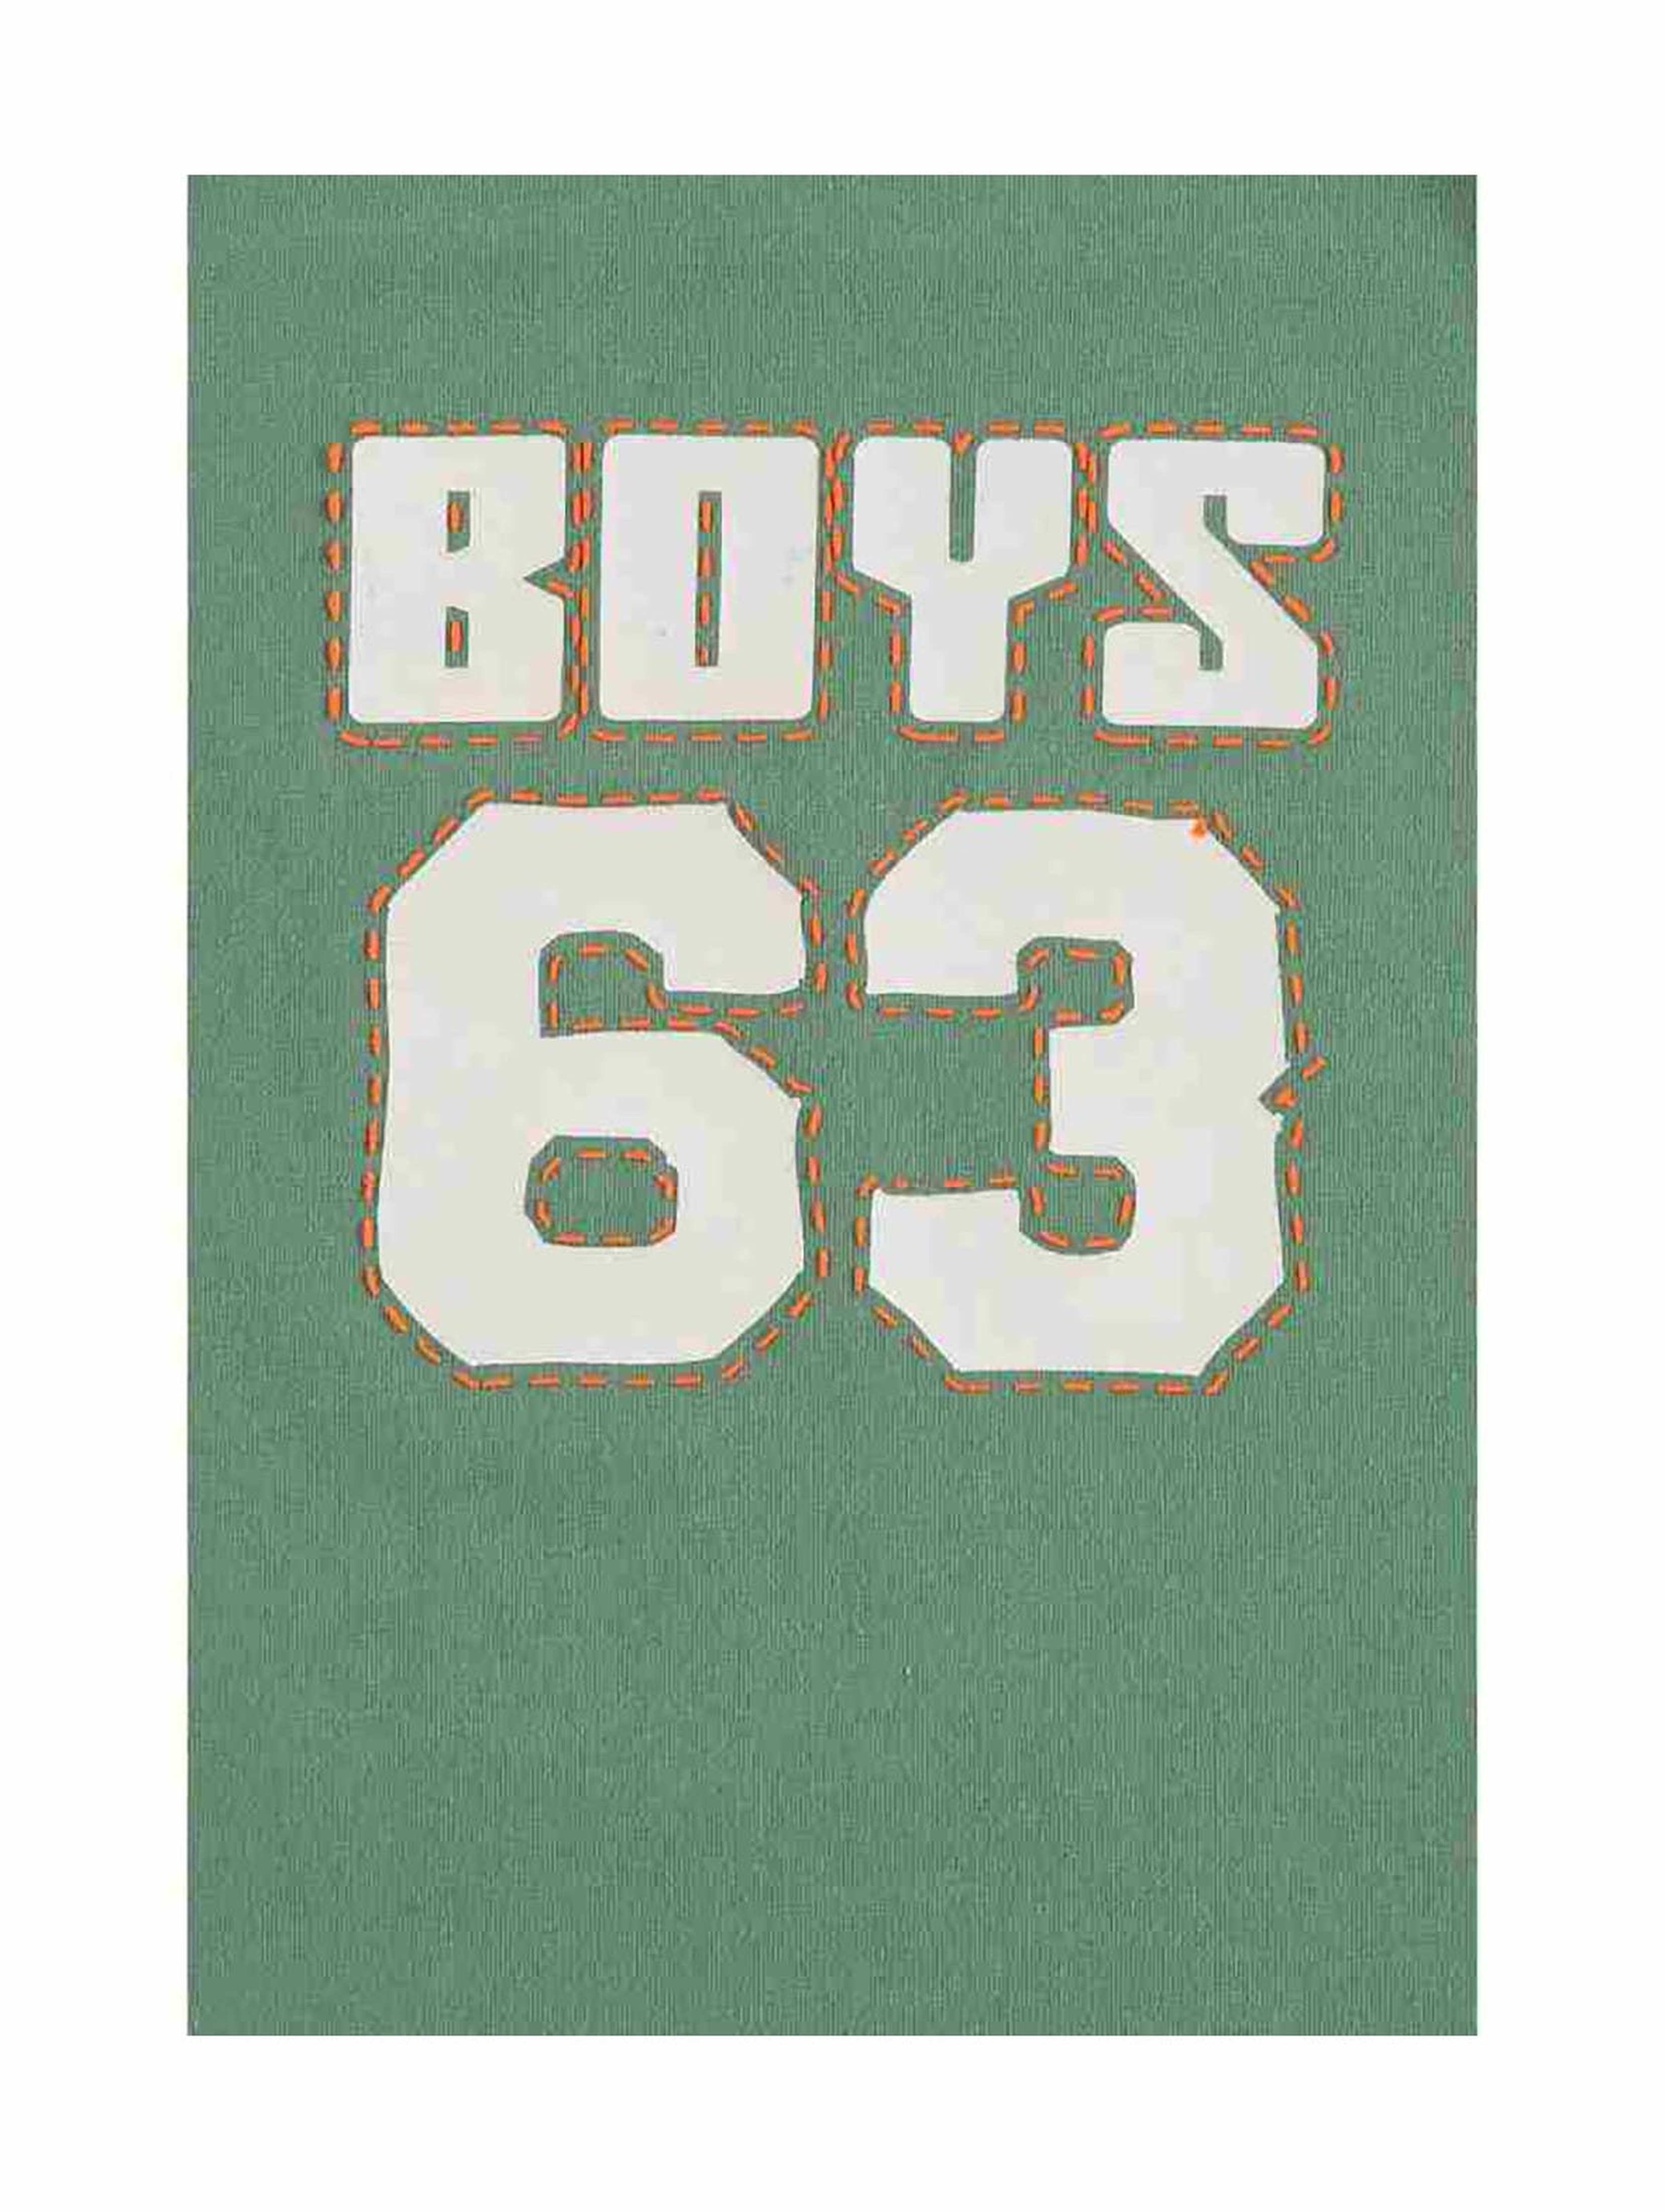 T-shirt chłopięcy zielony - Boys 63 - Lief